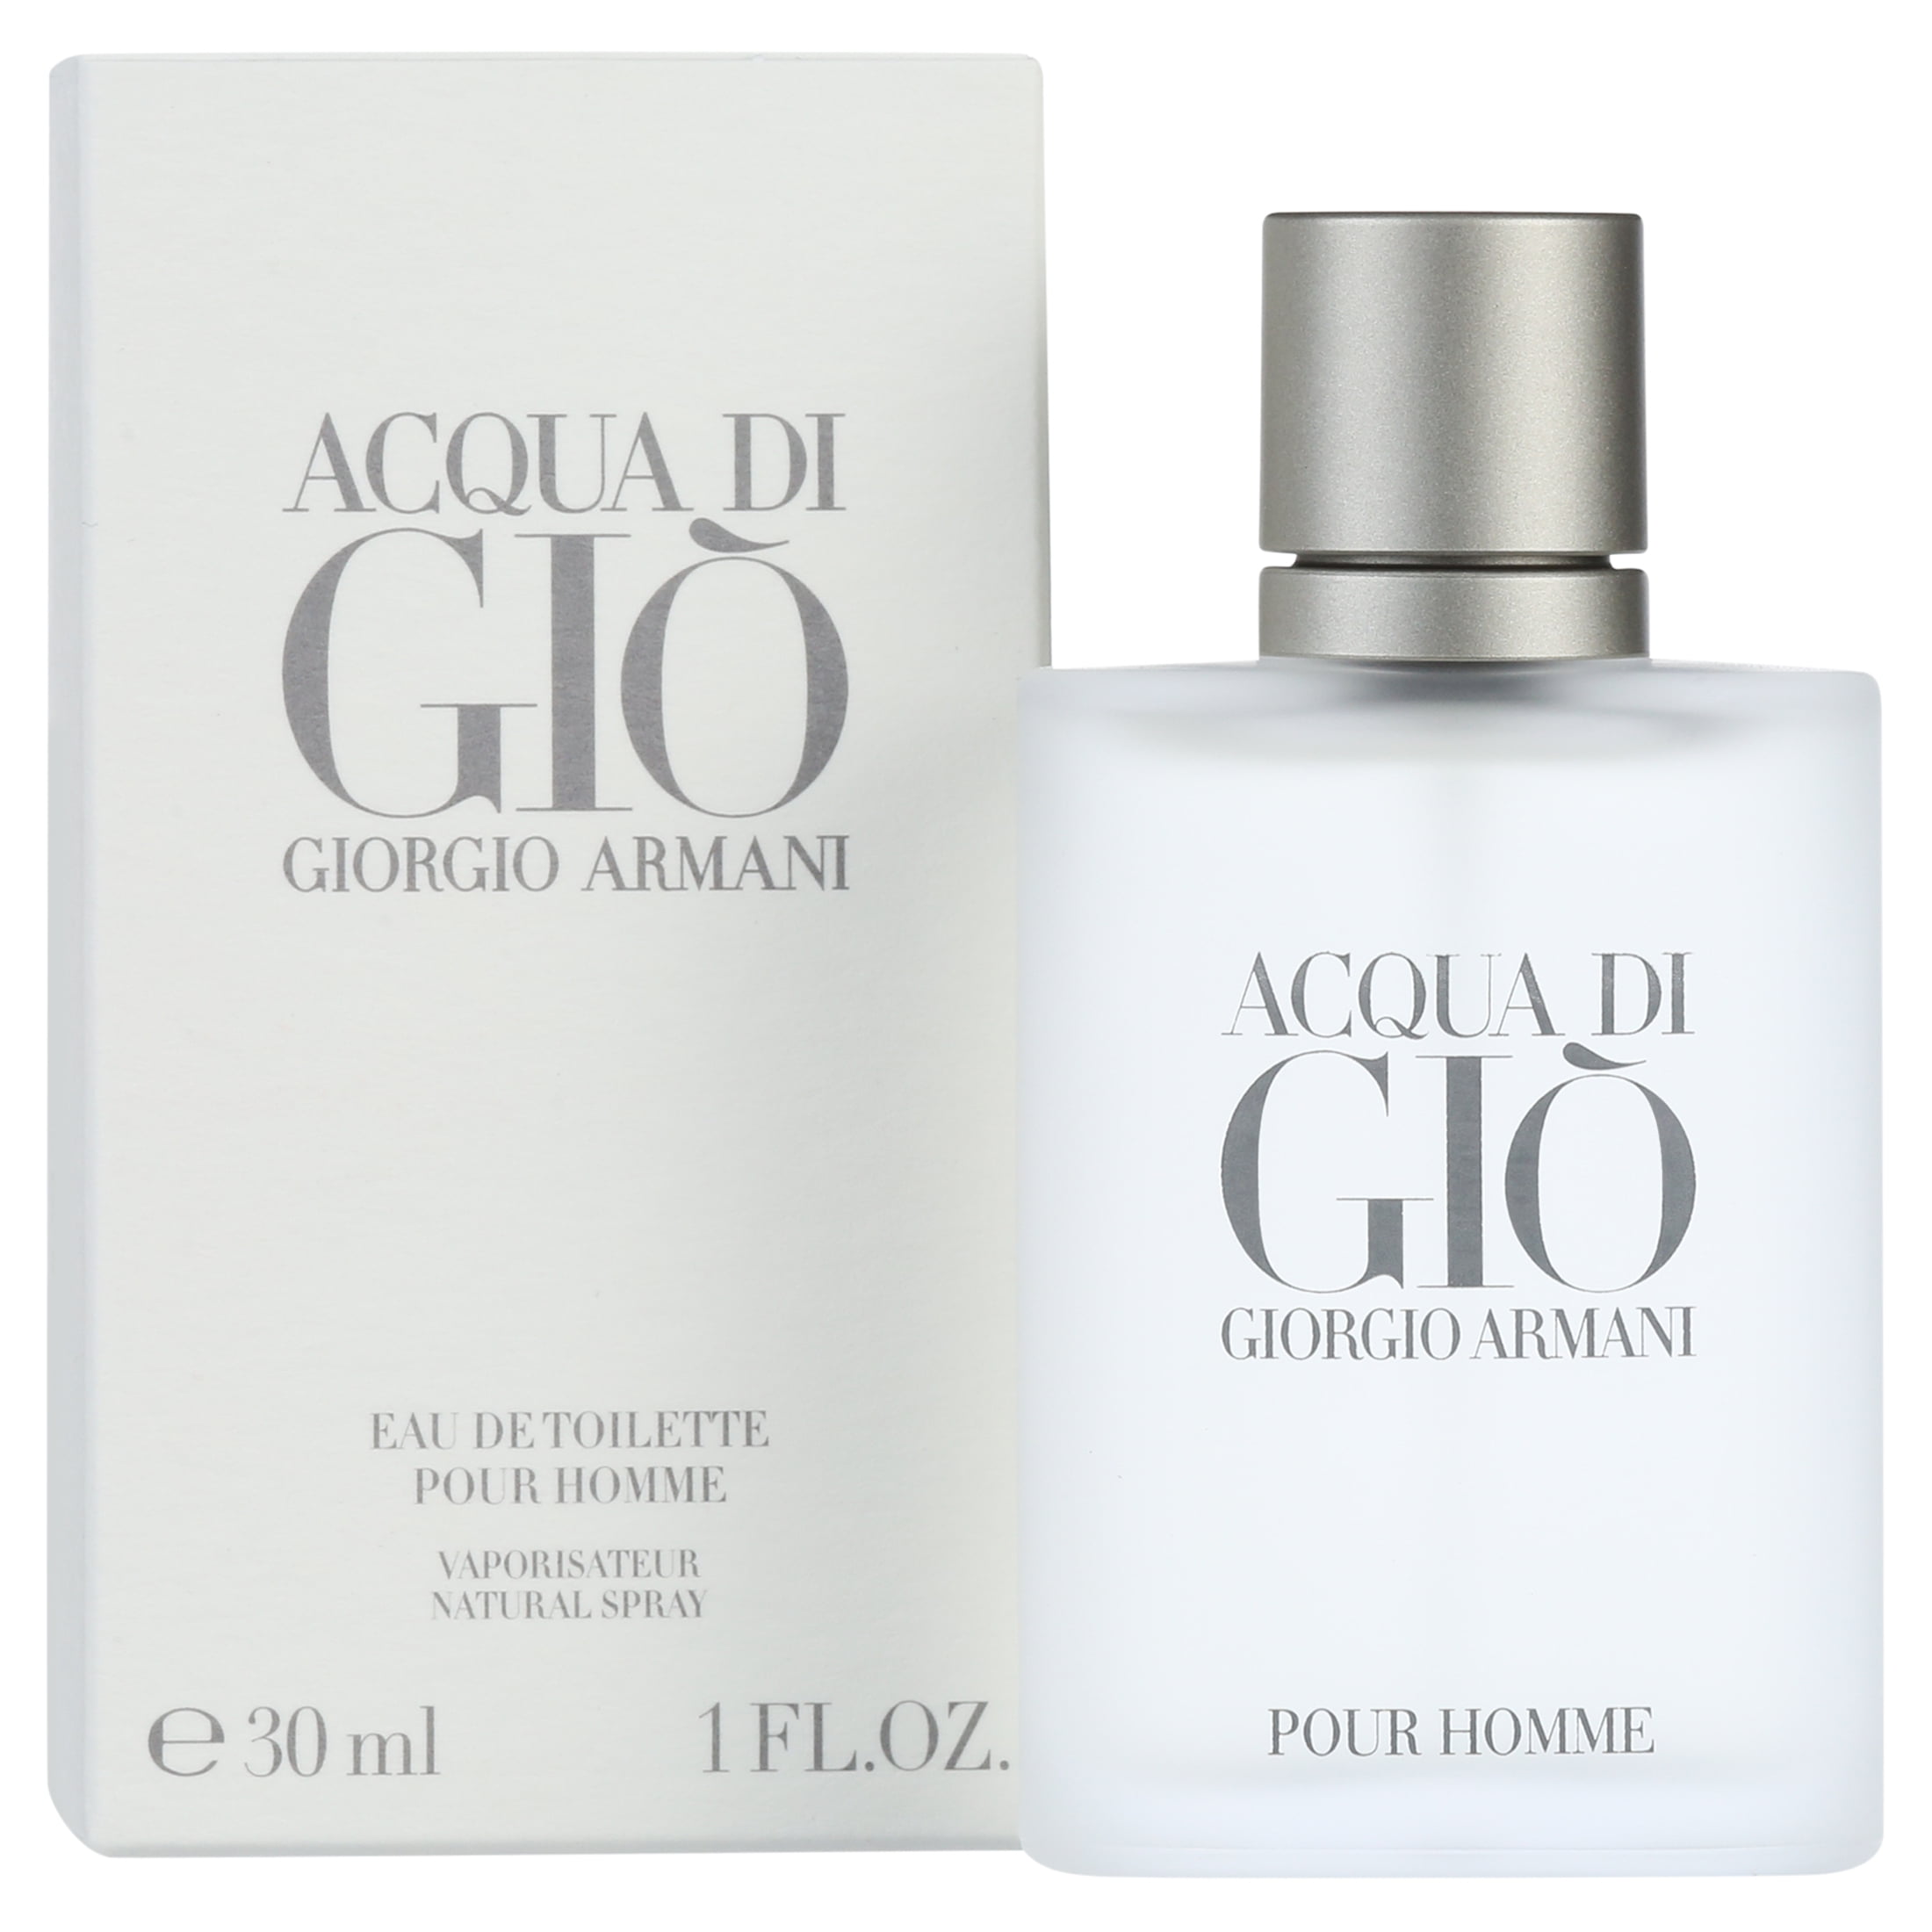 Giorgio Armani Acqua Di Gio Eau de Toilette, Cologne for Men, 1 oz -  